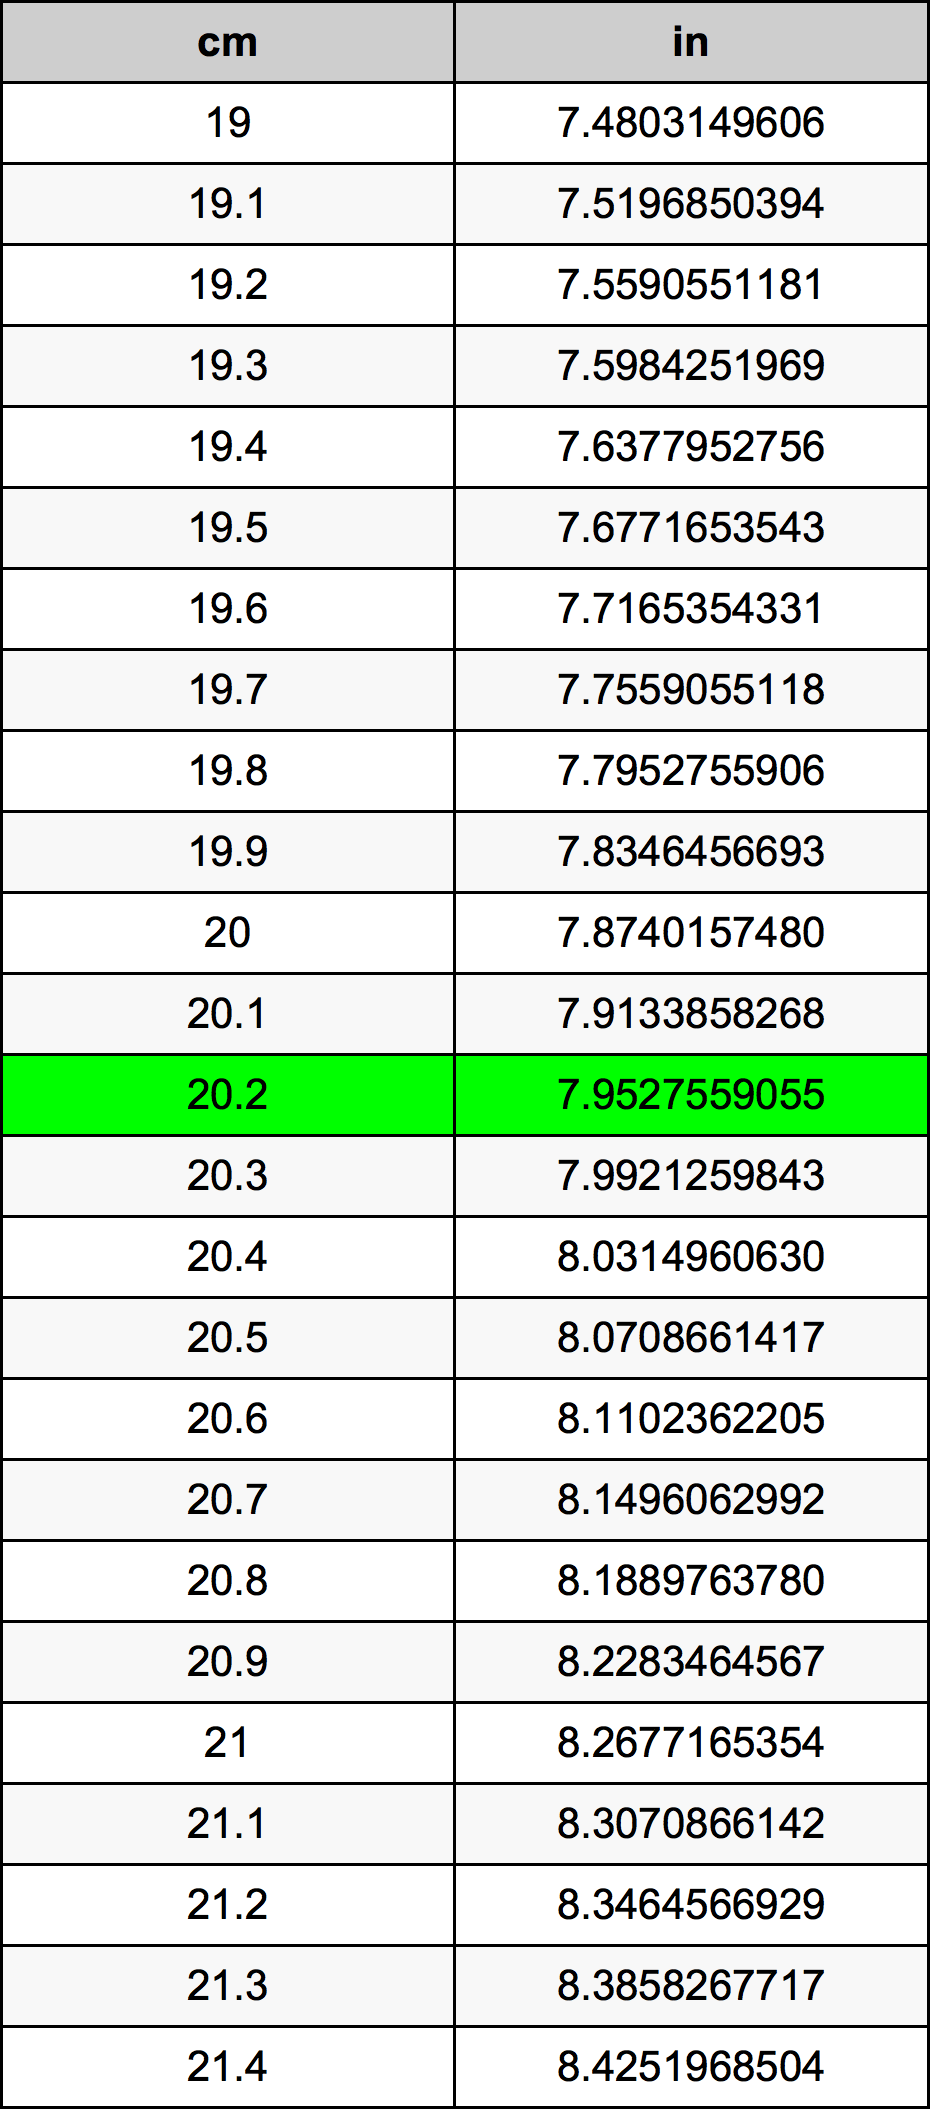 20.2 Centiméter átszámítási táblázat